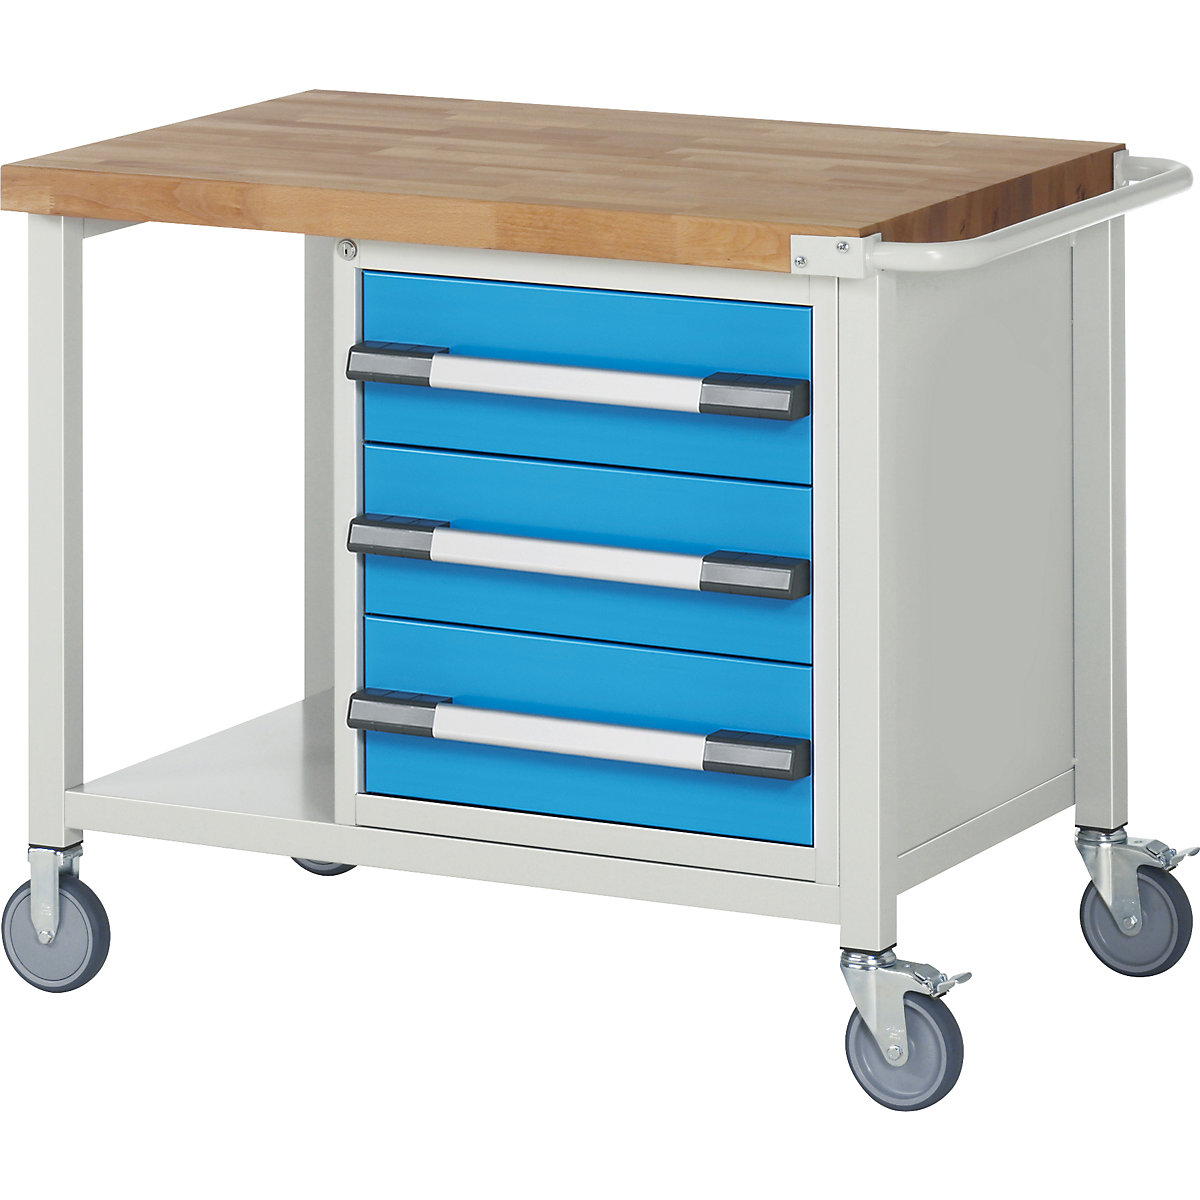 Series 8 mobile workbench, frame system – eurokraft pro, 3 drawers, storage shelf, WxD 1000 x 700 mm-7